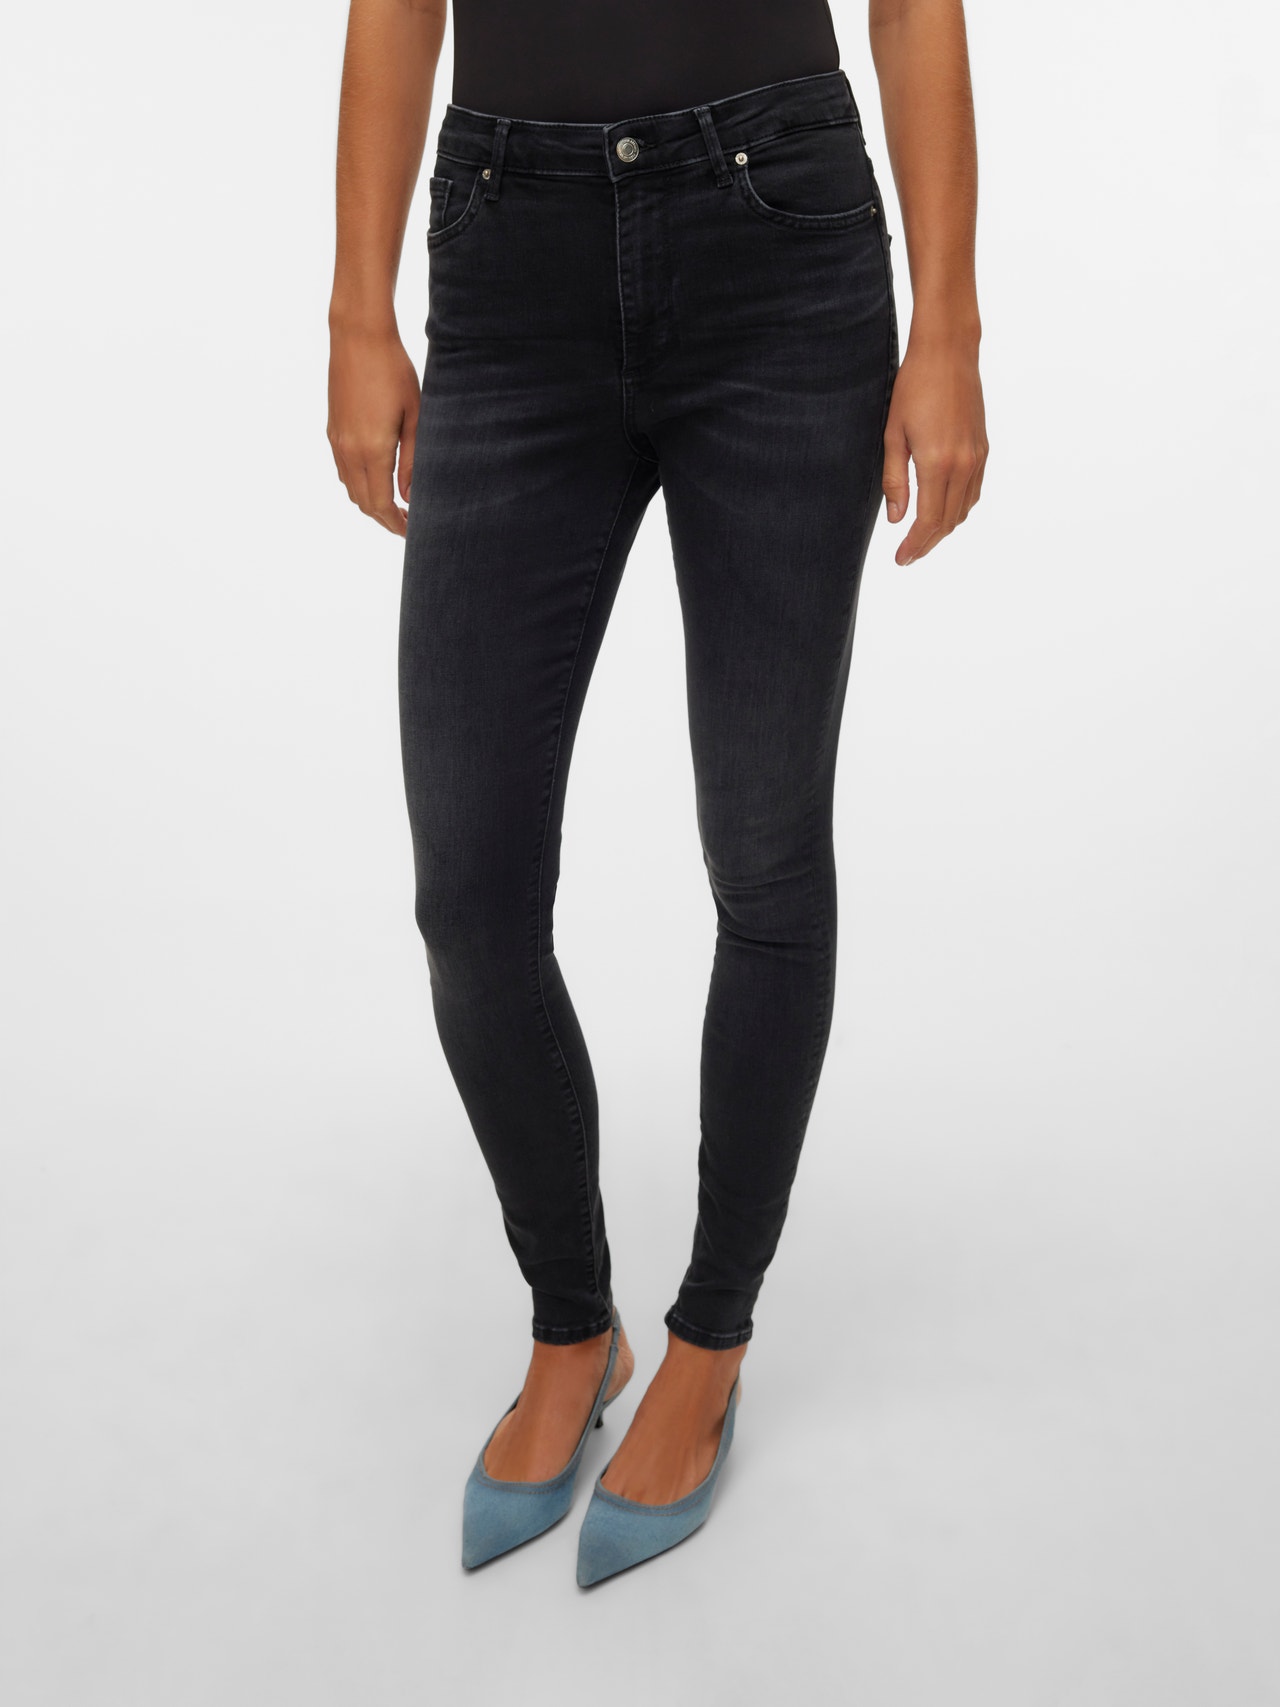 Vero Moda VMSOPHIA Skinny Fit Jeans -Black Denim - 10311183